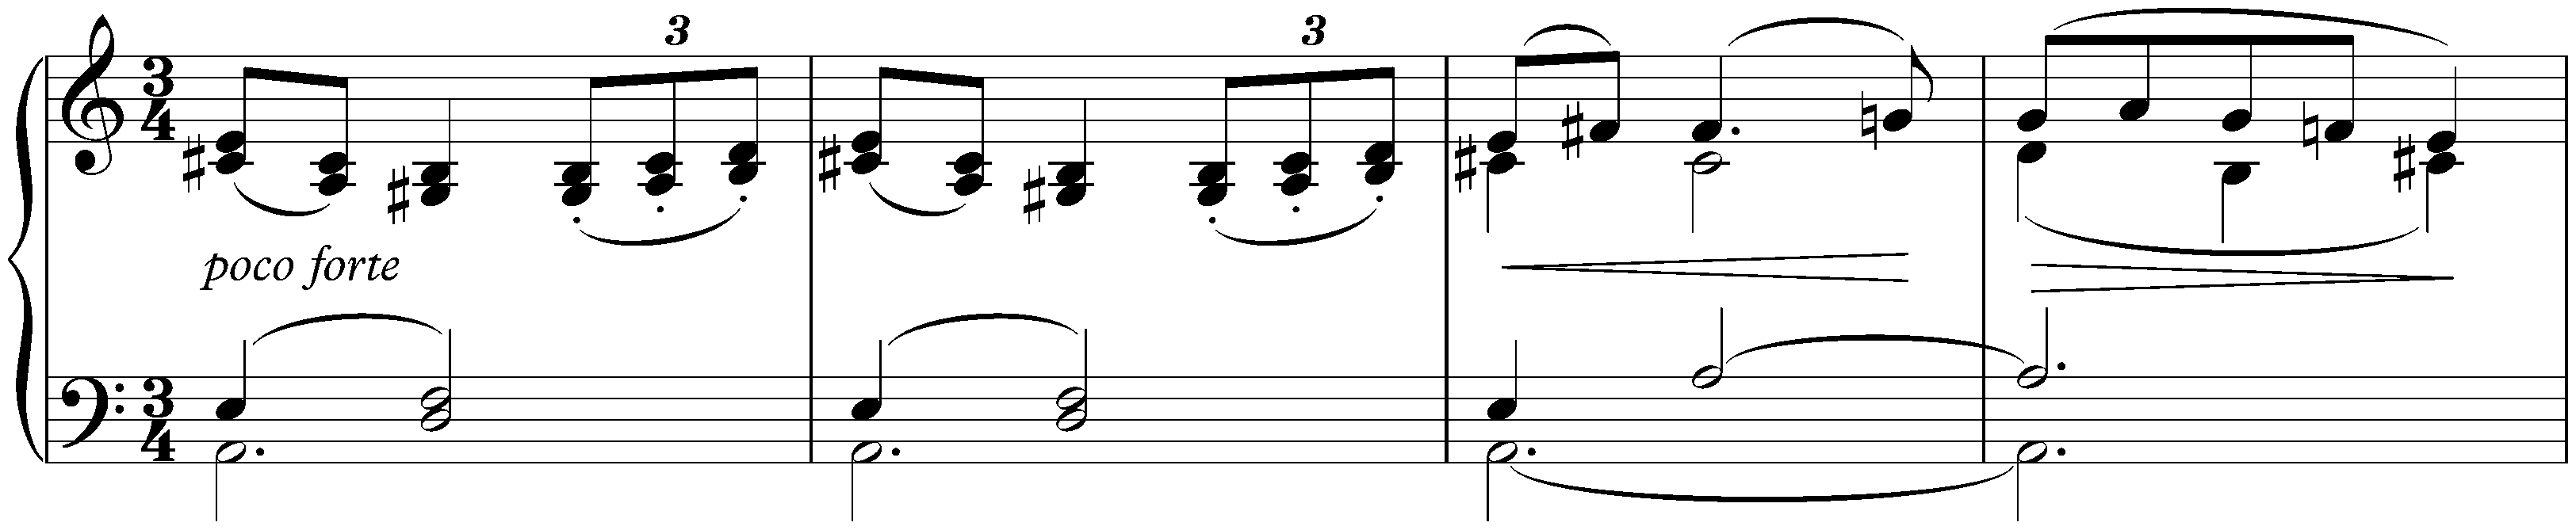 Two Sarabandes, WoO 5; 1. A minor